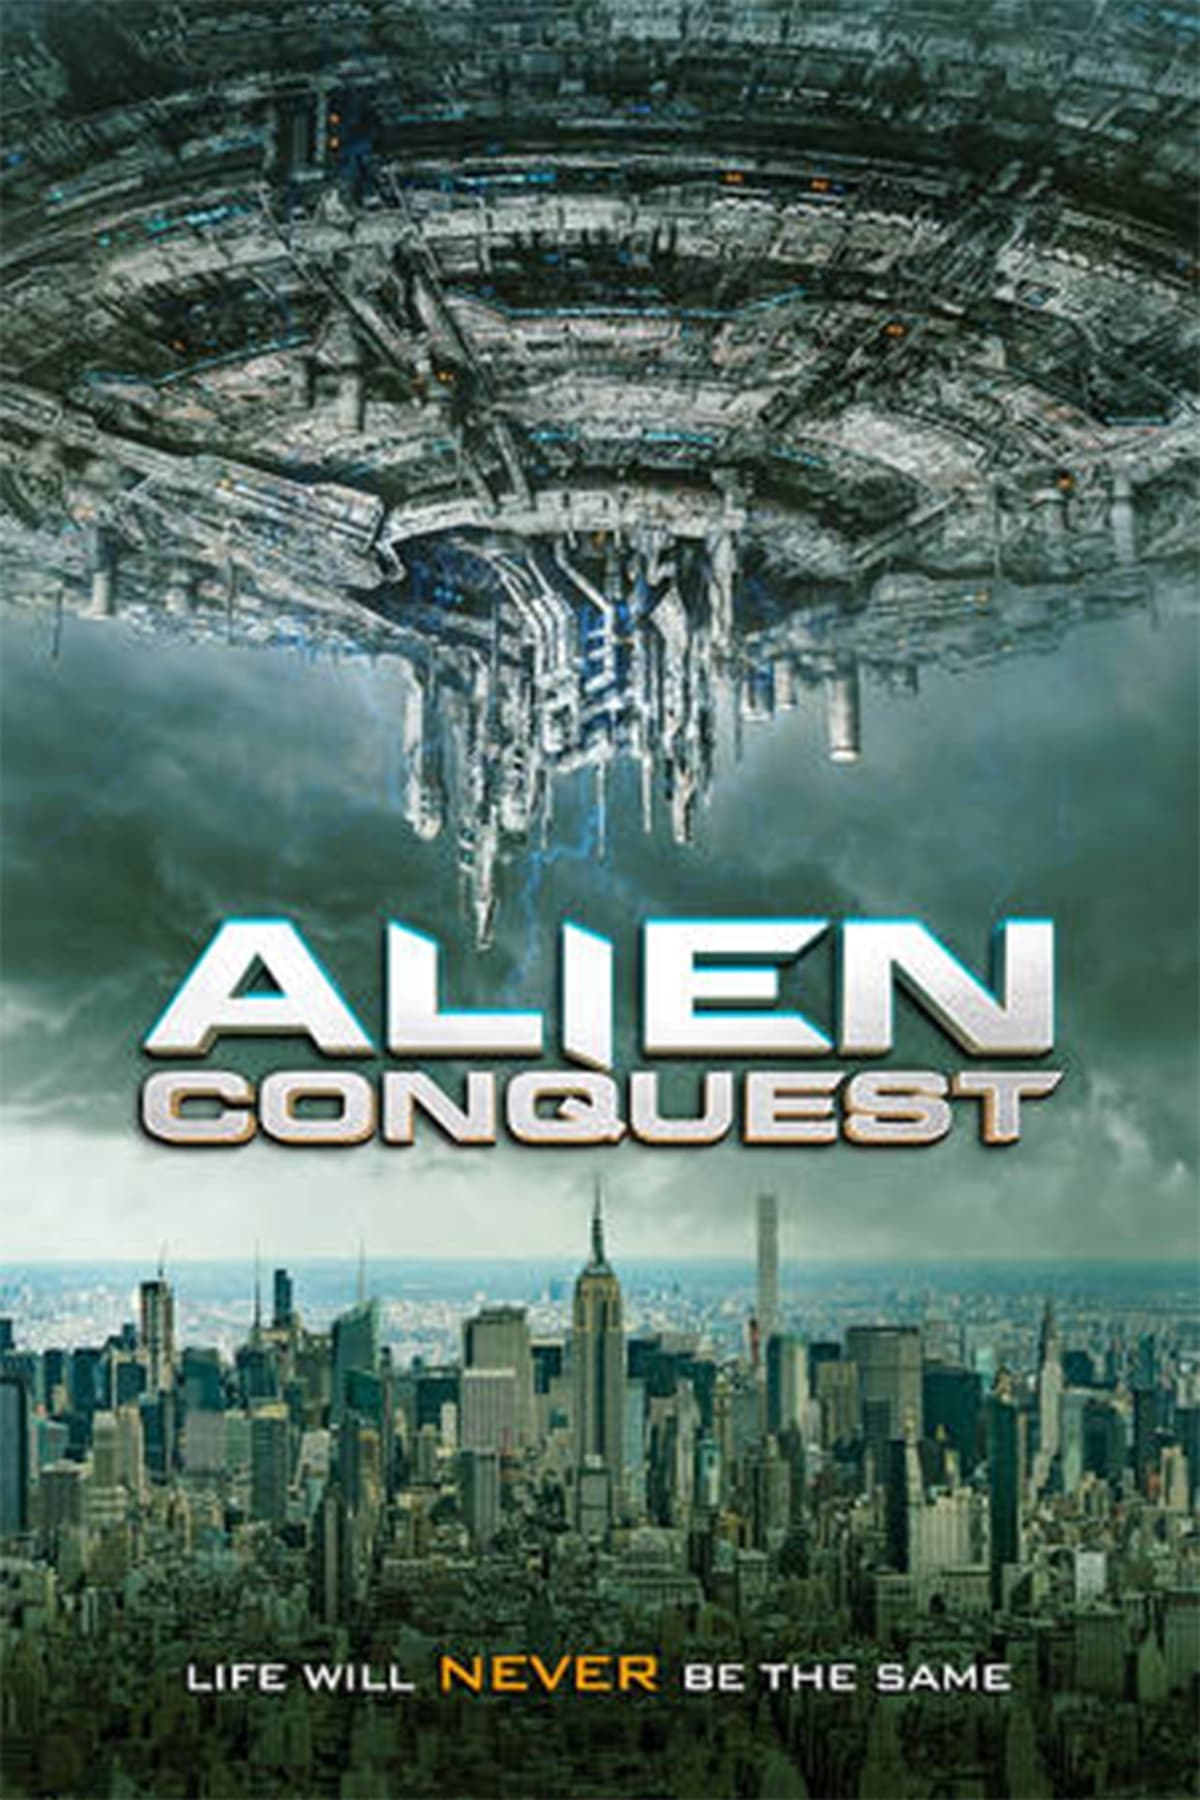 Alien Conquest film